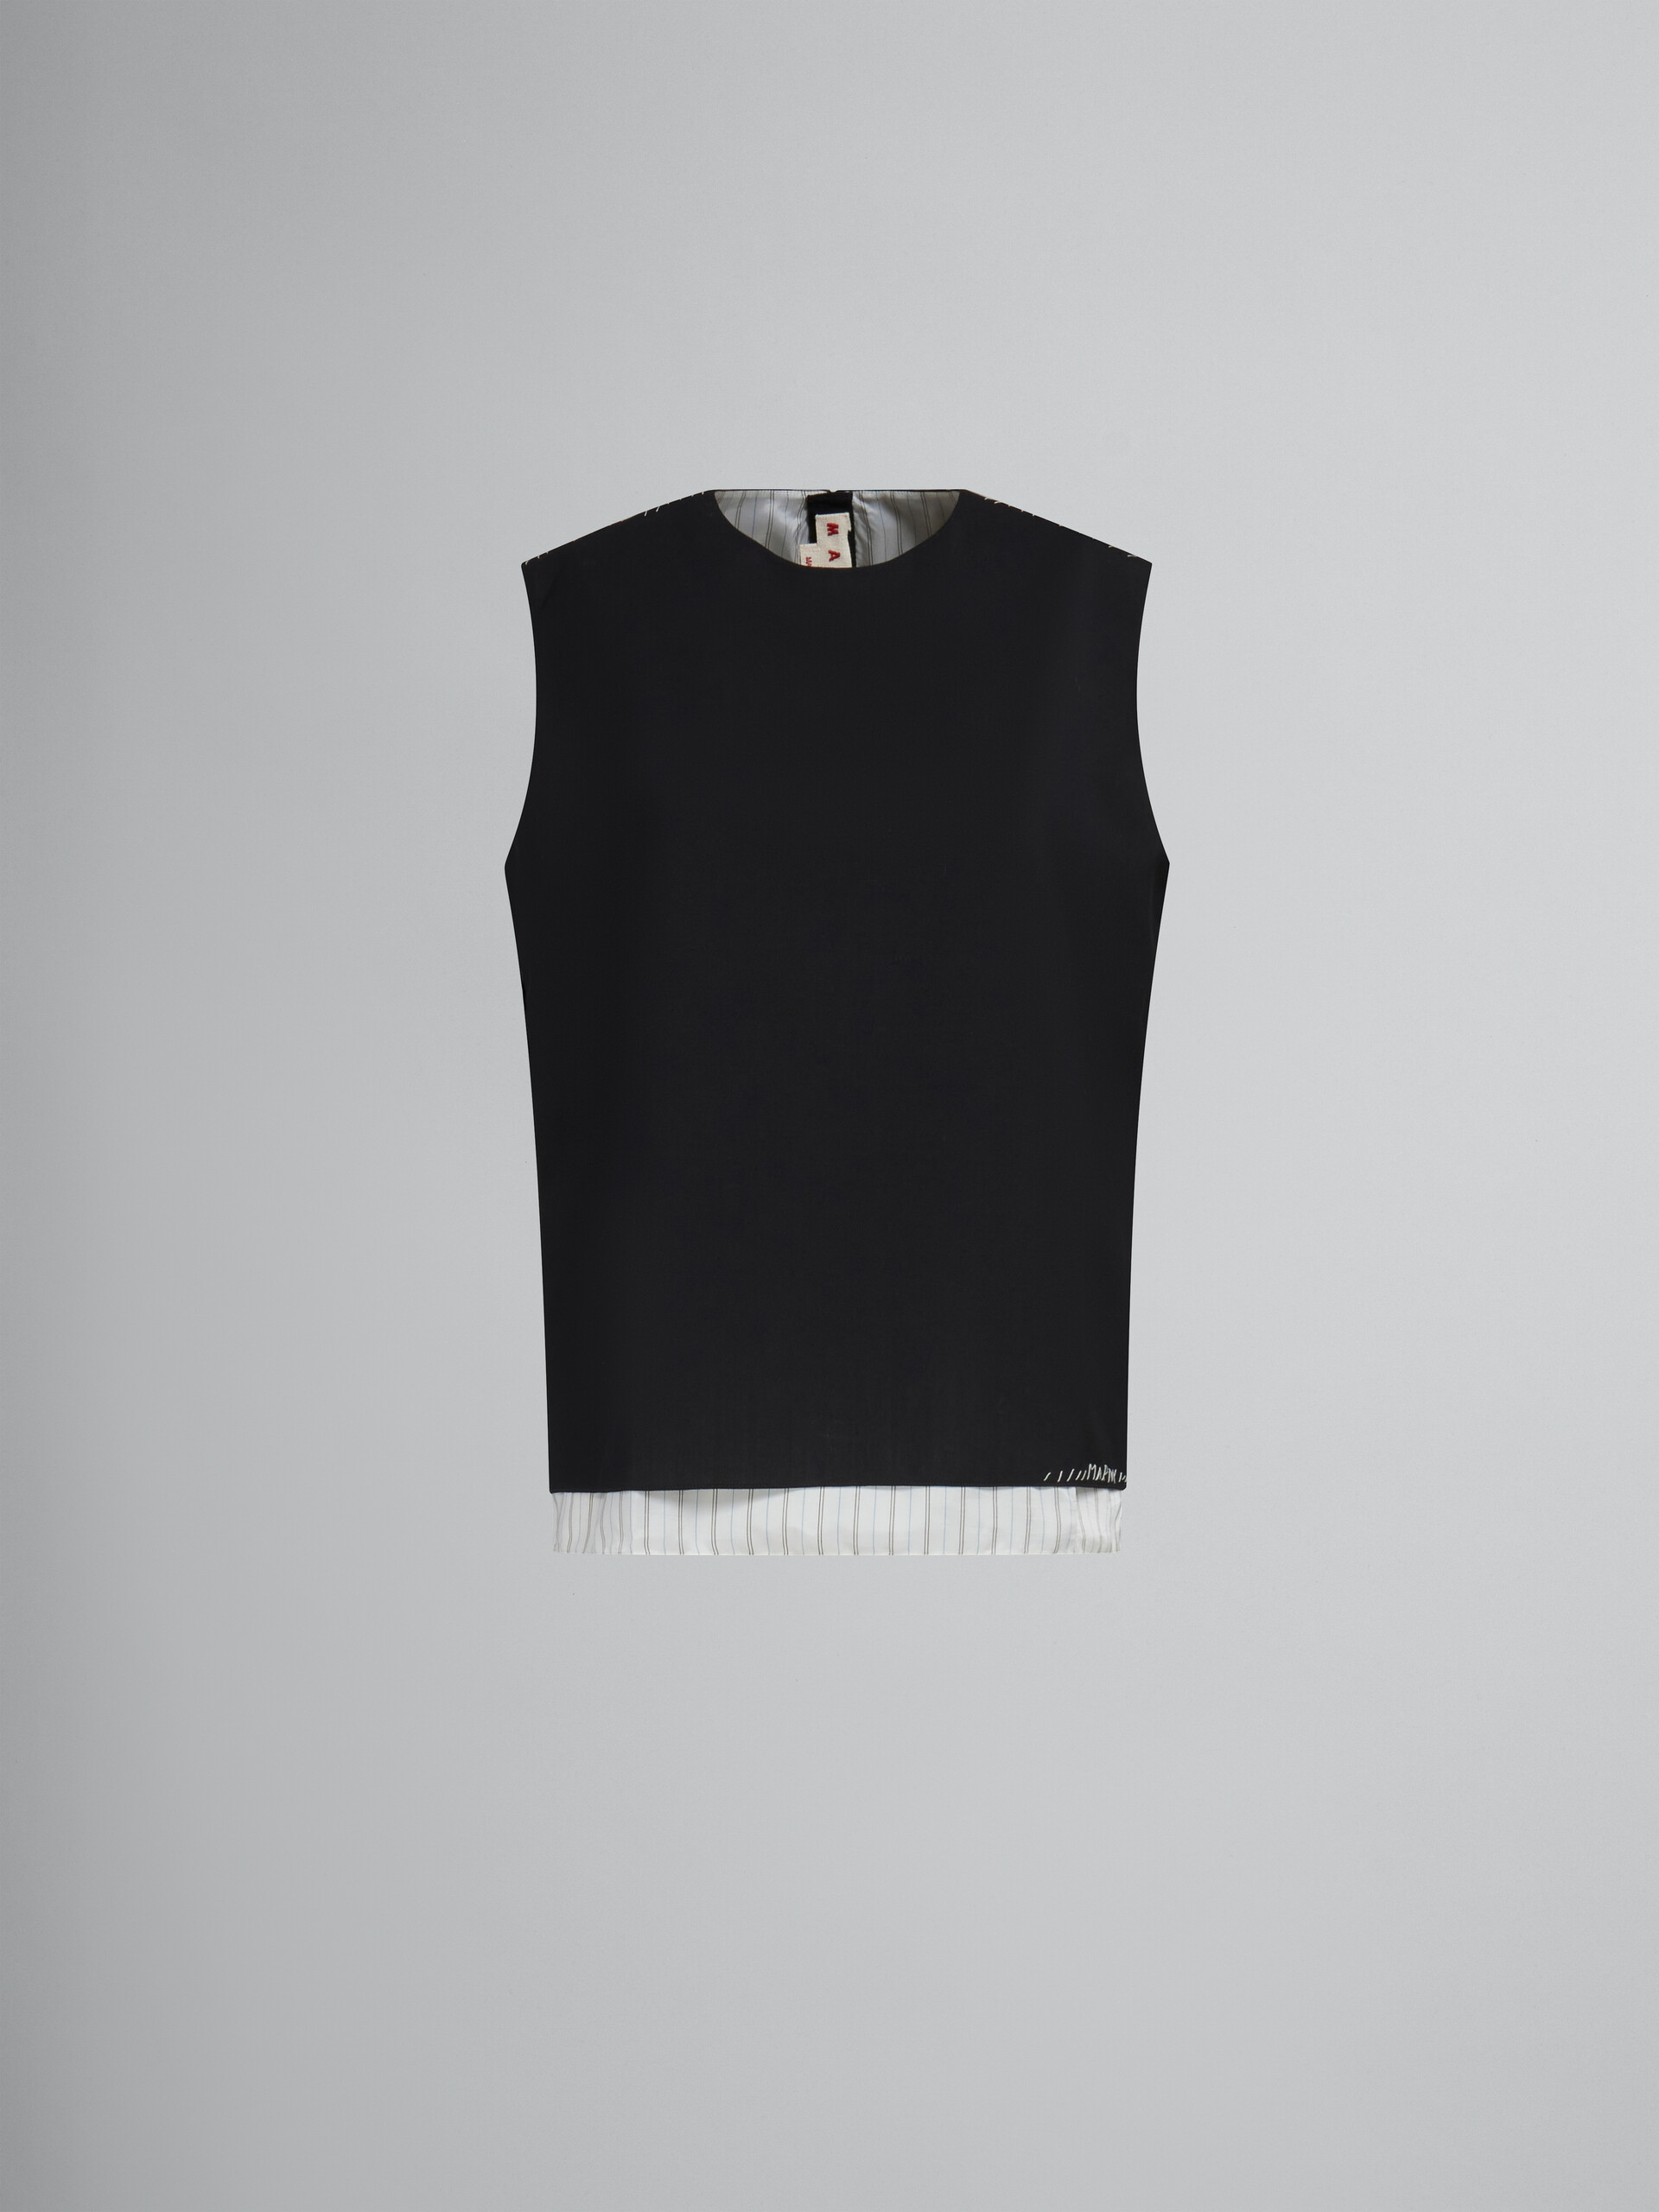 Top sin mangas de lana tropical negra con efecto remiendo Marni - Camisas - Image 1